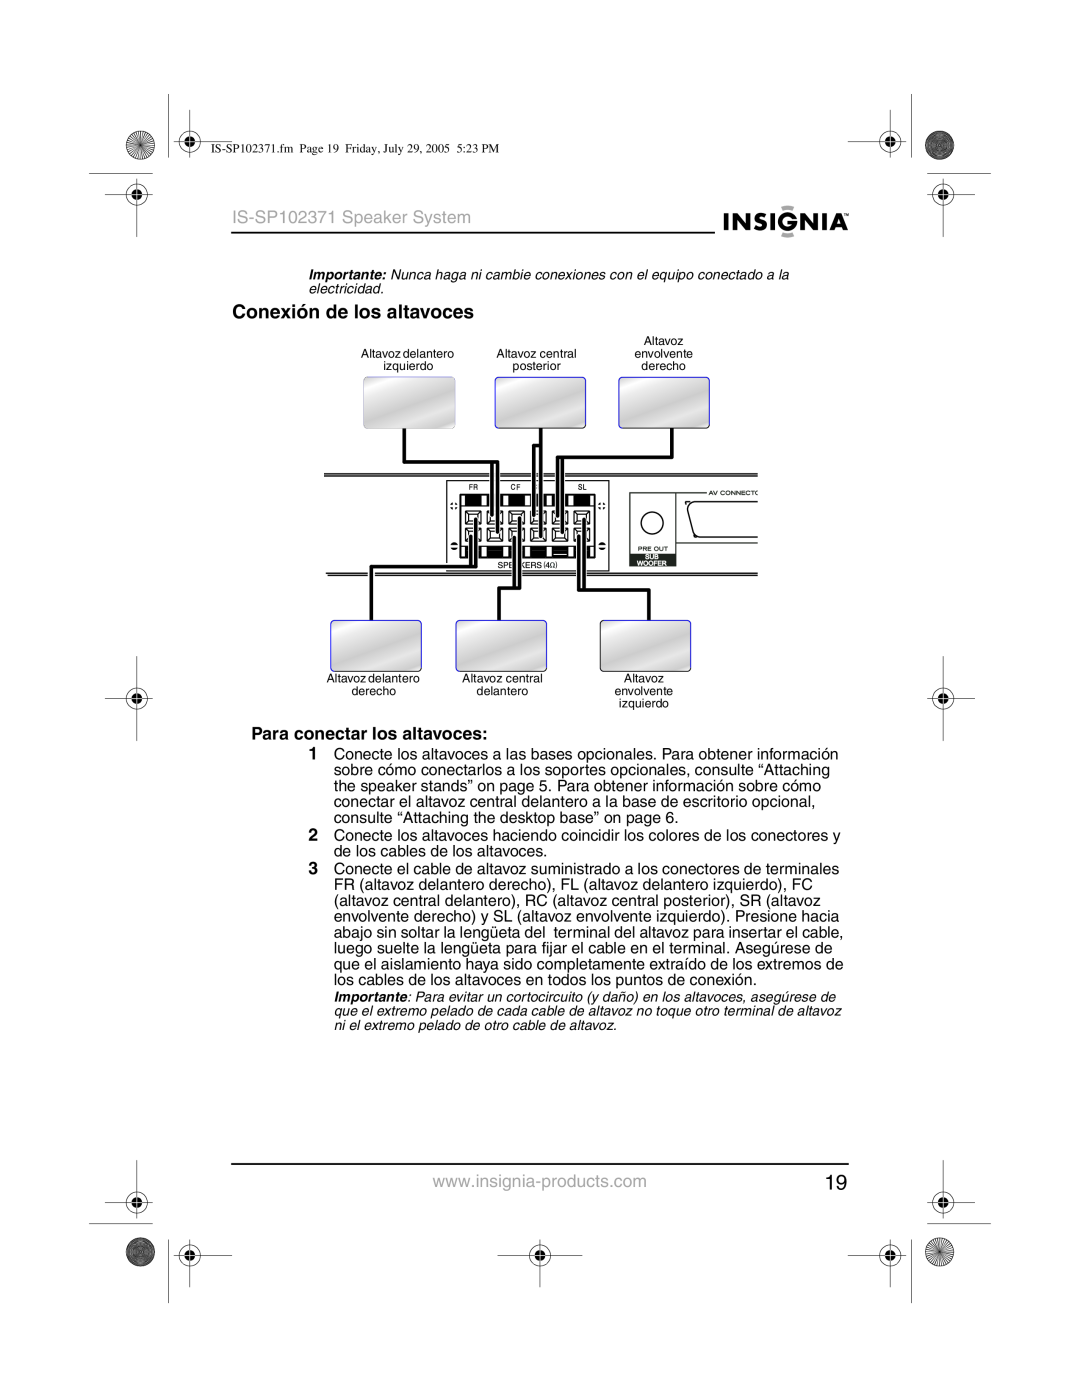 Insignia manual Conexión de los altavoces, Para conectar los altavoces, IS-SP102371Speaker System 